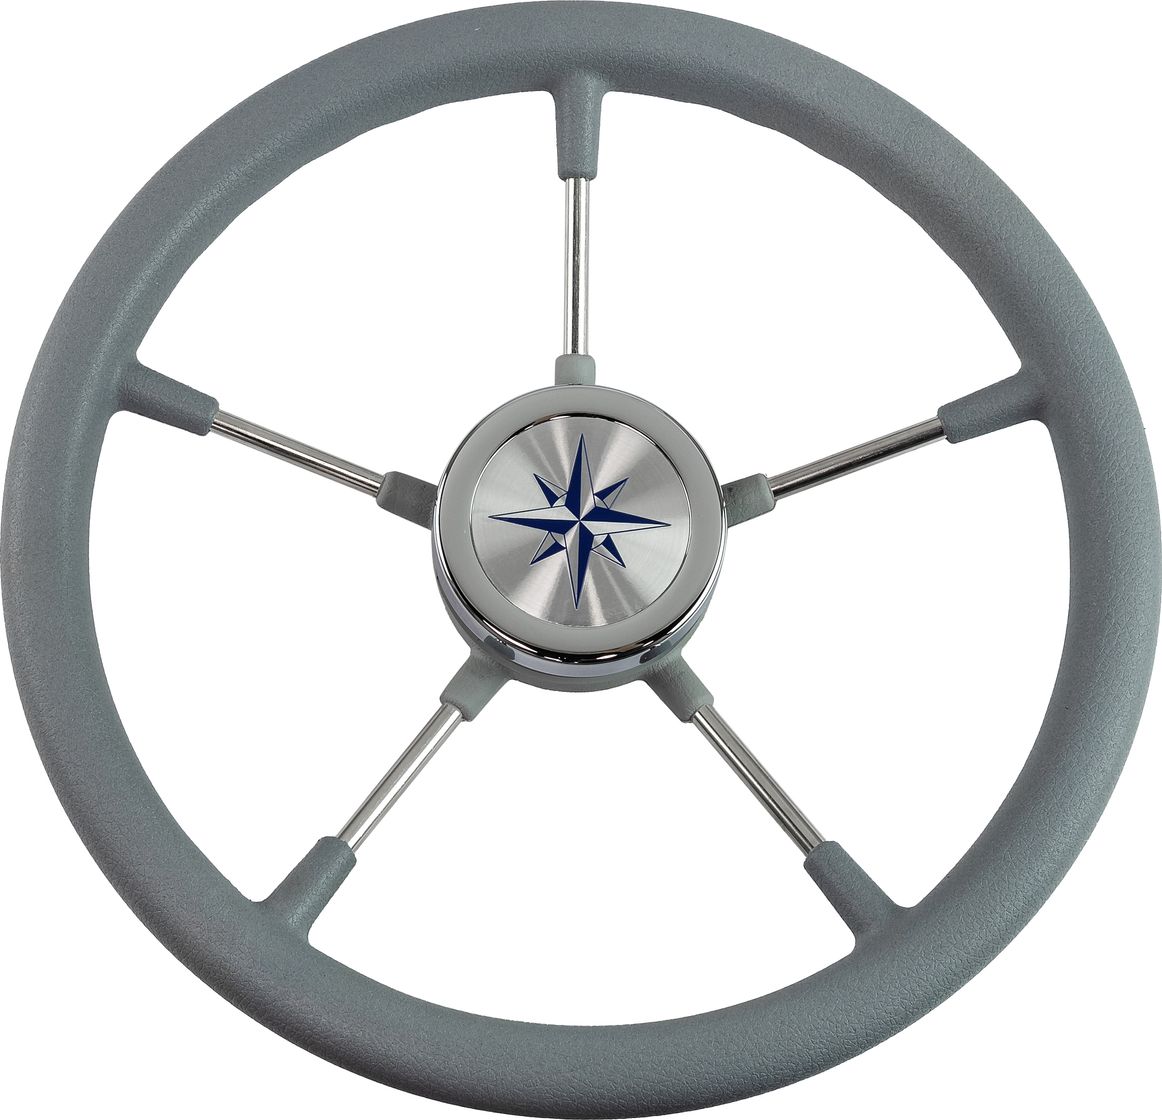 Рулевое колесо RIVA RSL обод серый, спицы серебряные д. 360 мм VN735022-03 рулевое колесо delfino обод серый спицы серебряные д 340 мм vn70401 03